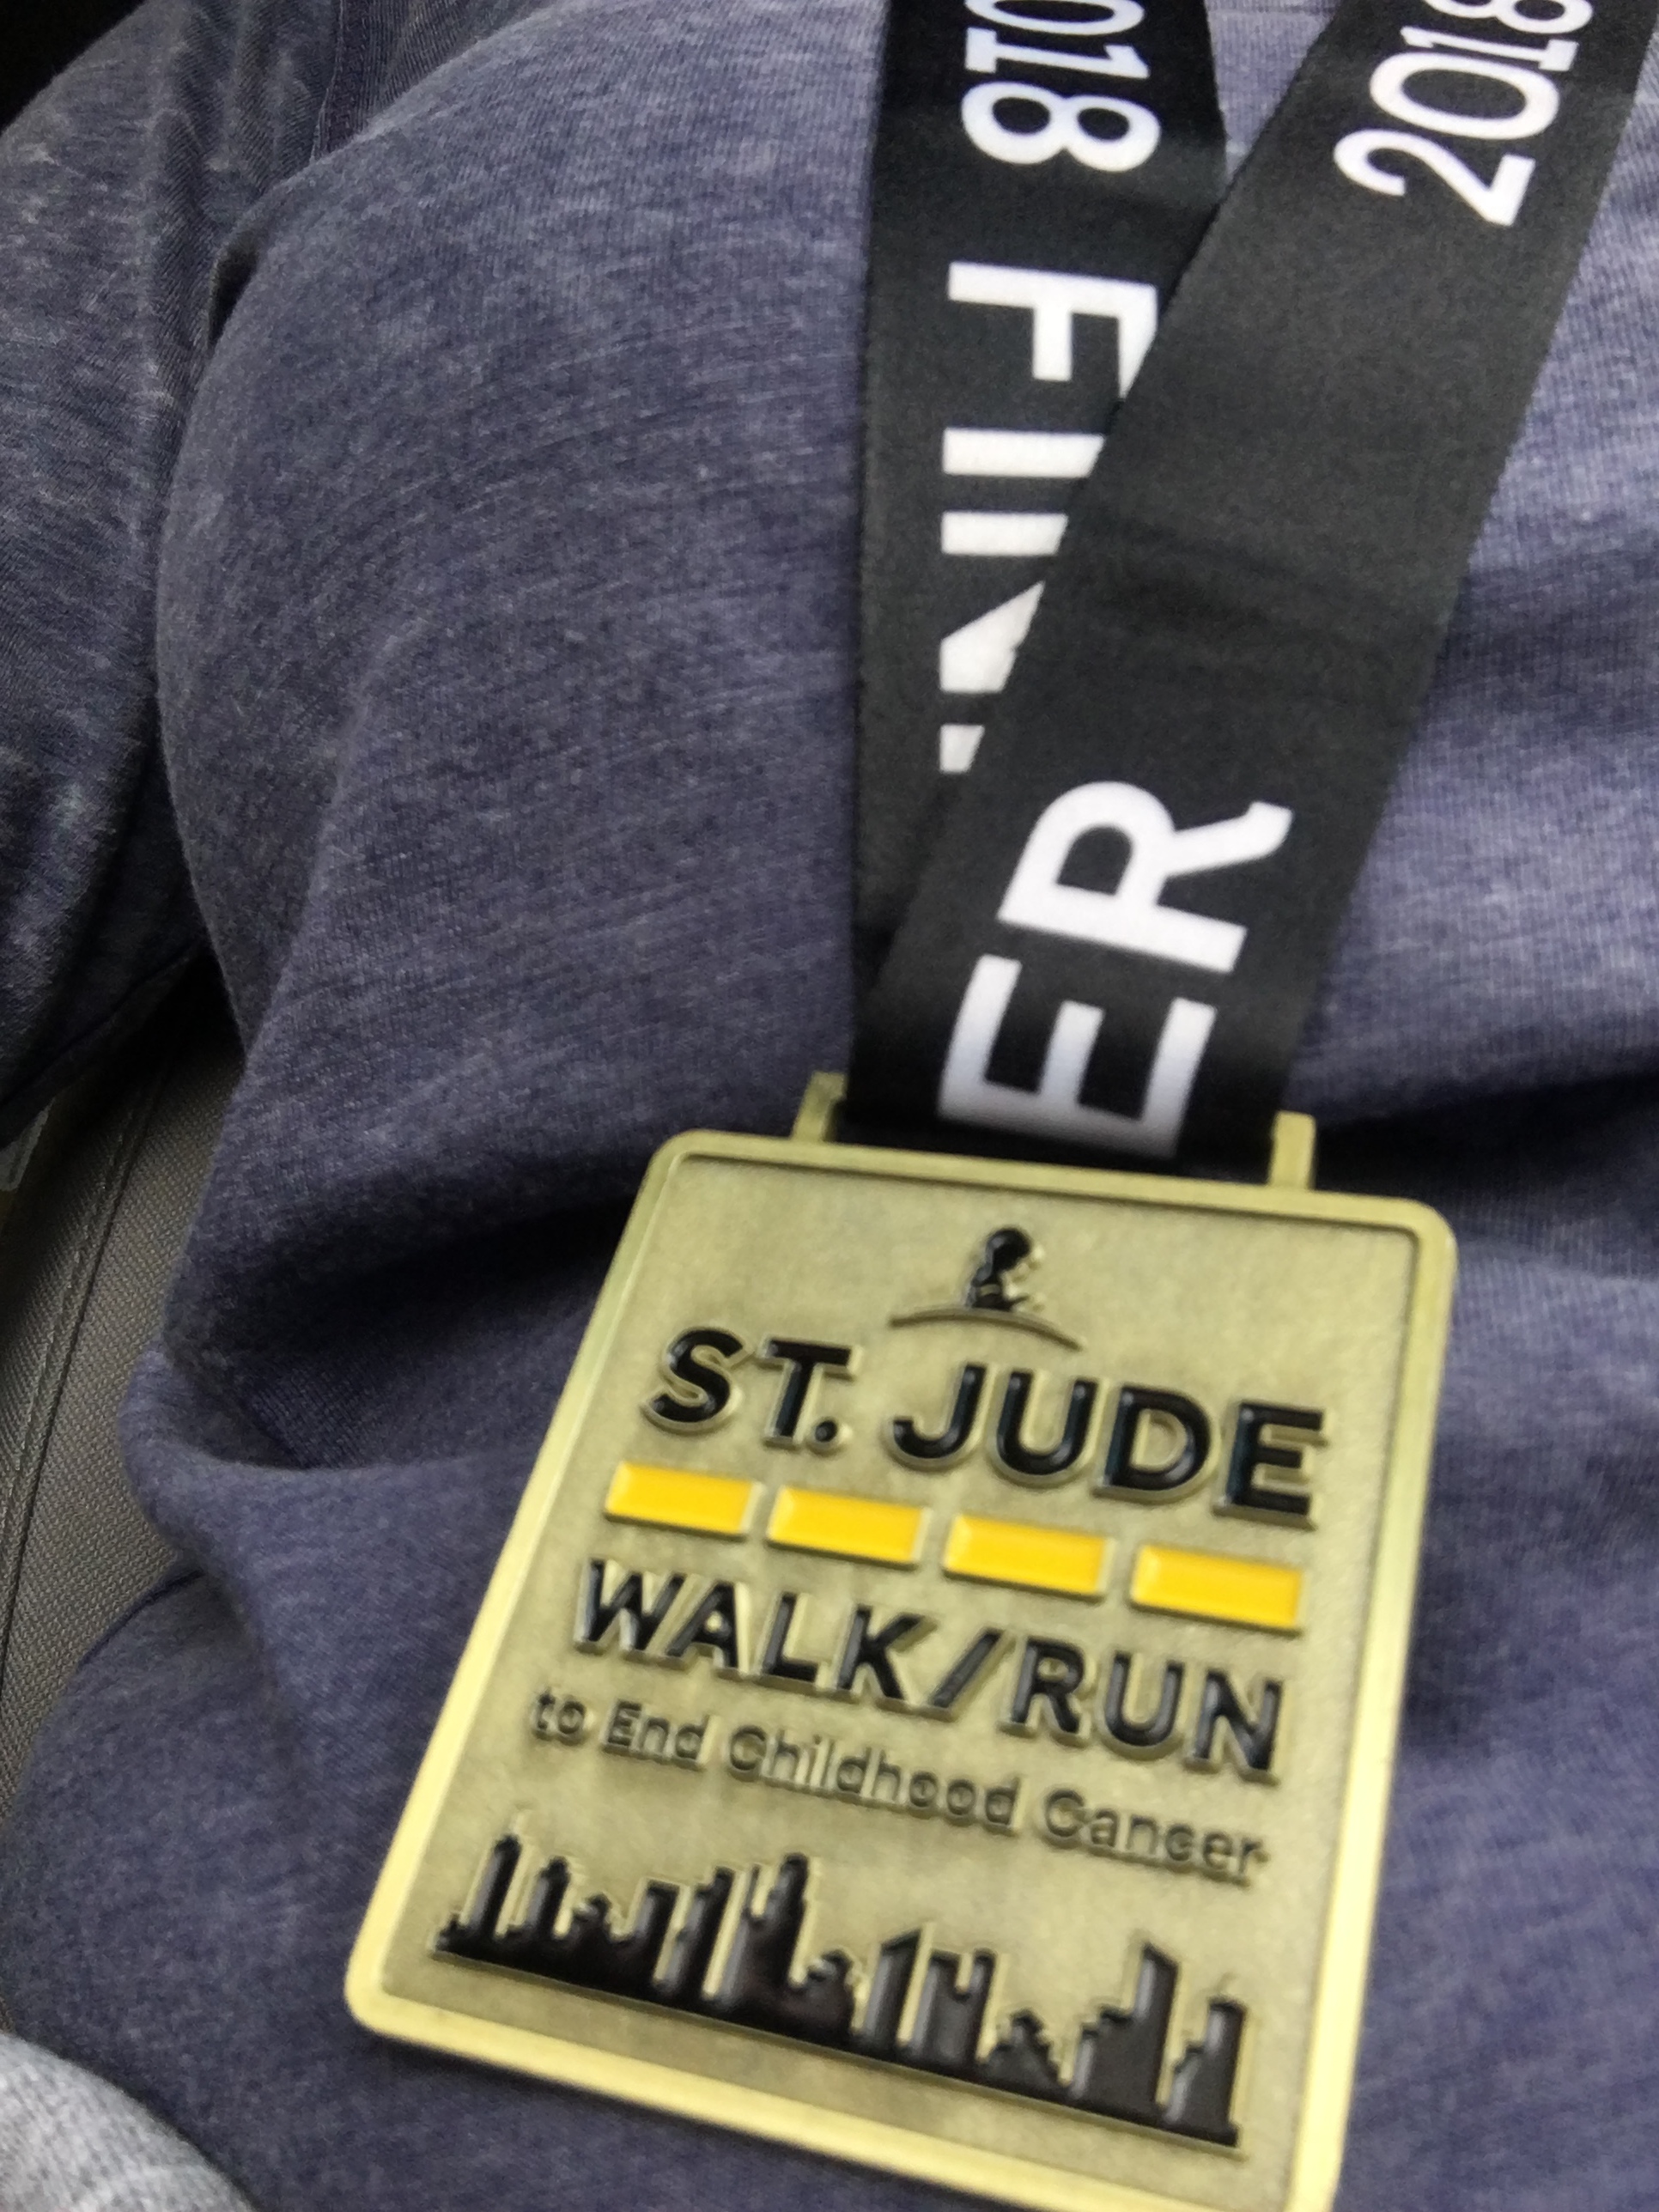 St Jude 5k Walk / Run